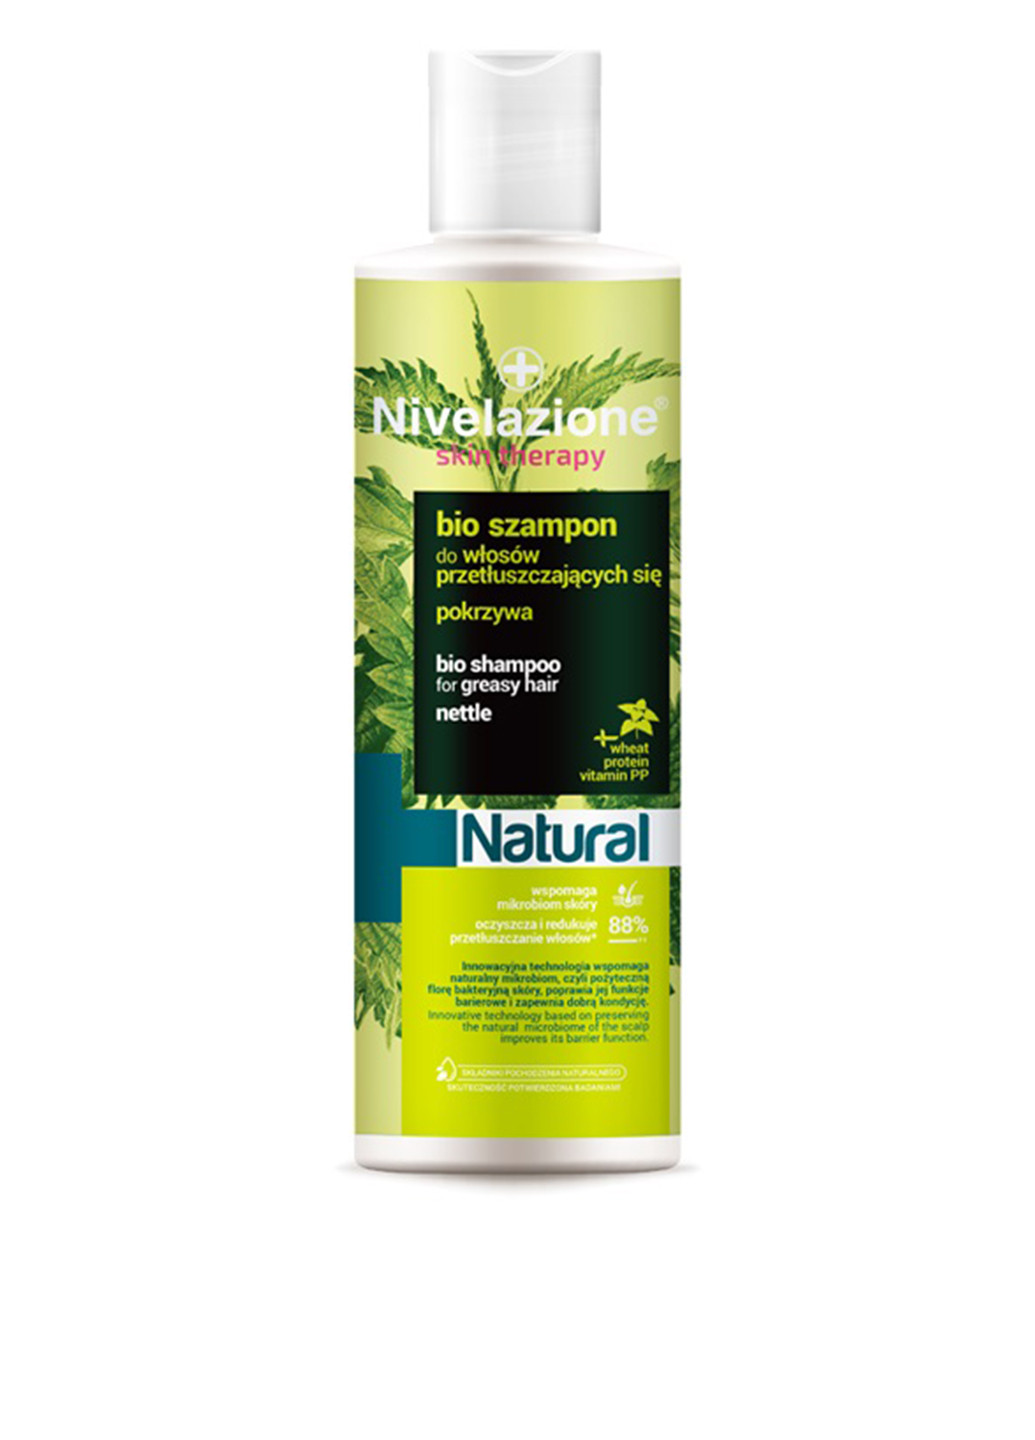 Біо-шампунь для жирного волосся Nivelazione Skin Therapy Natural, 300 мл Farmona (176658386)